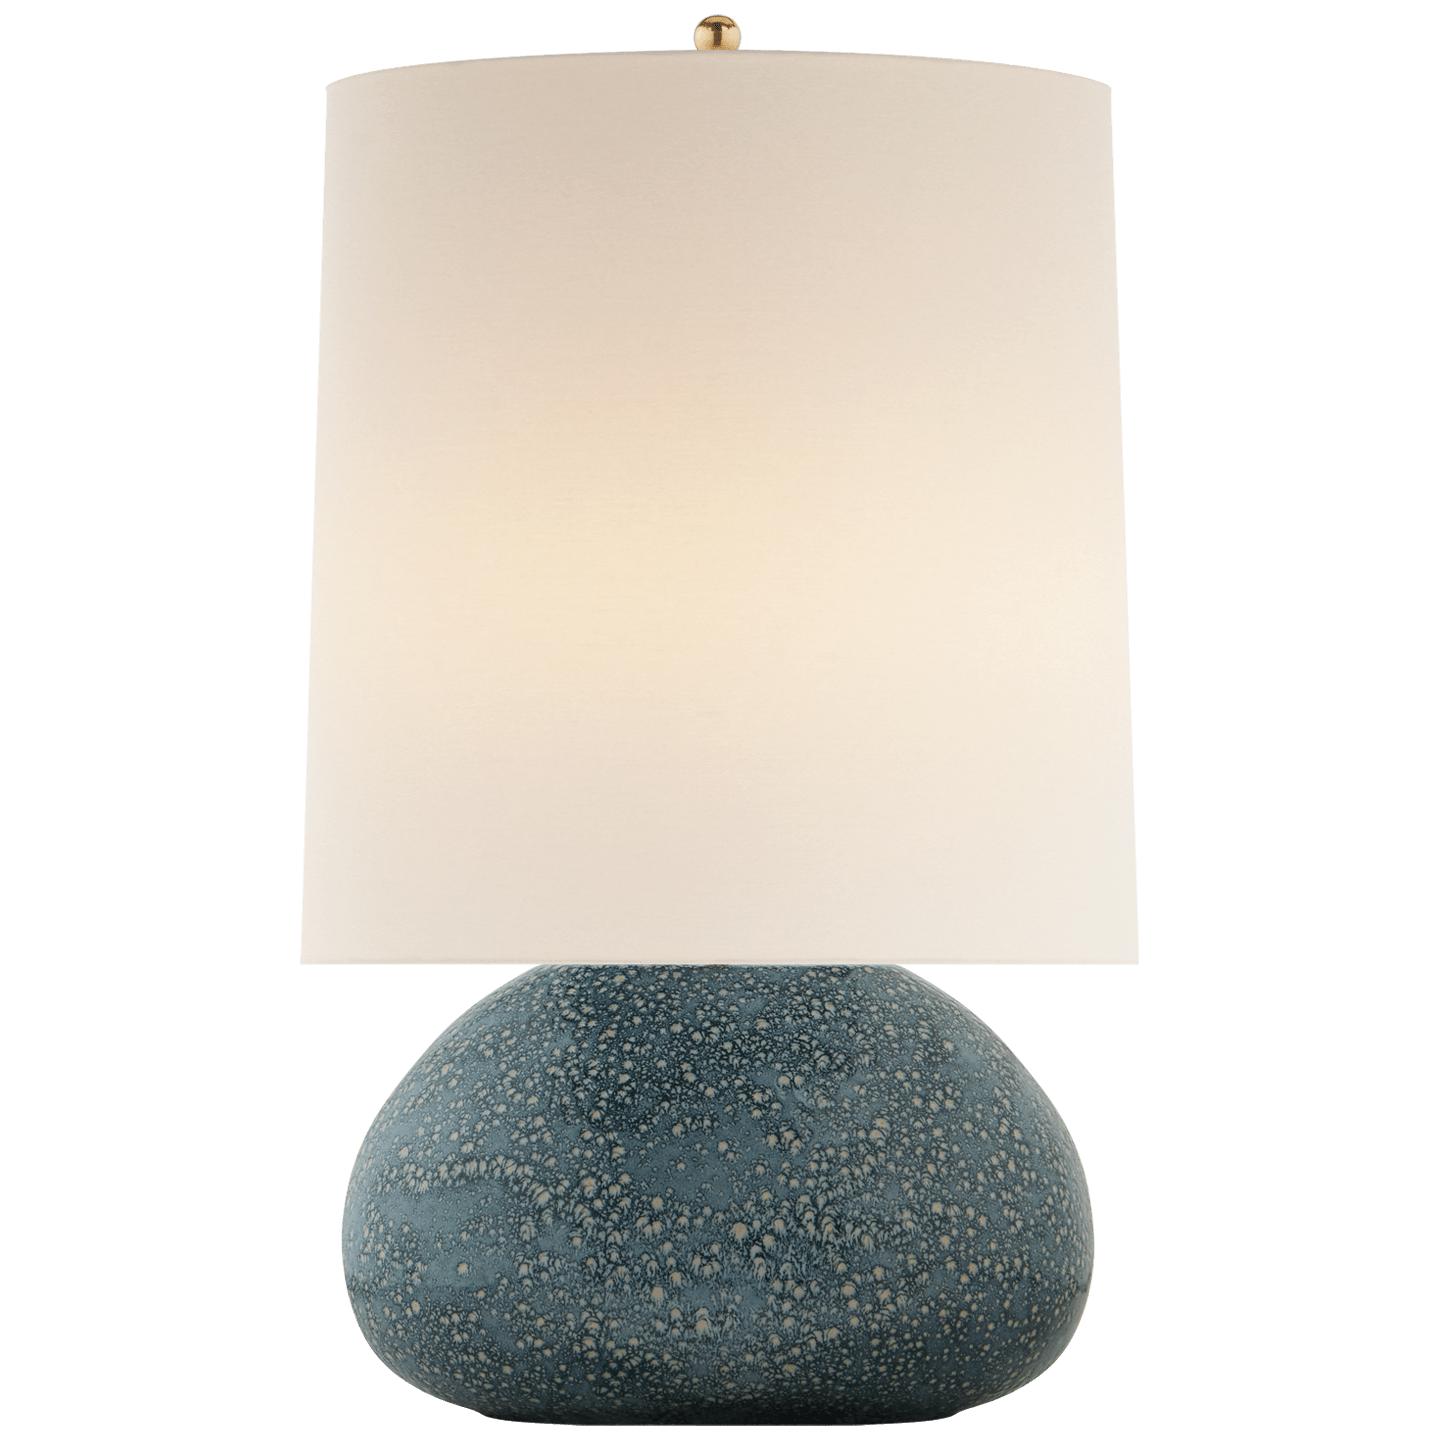 Купить Настольная лампа Sumava Medium Table Lamp в интернет-магазине roooms.ru